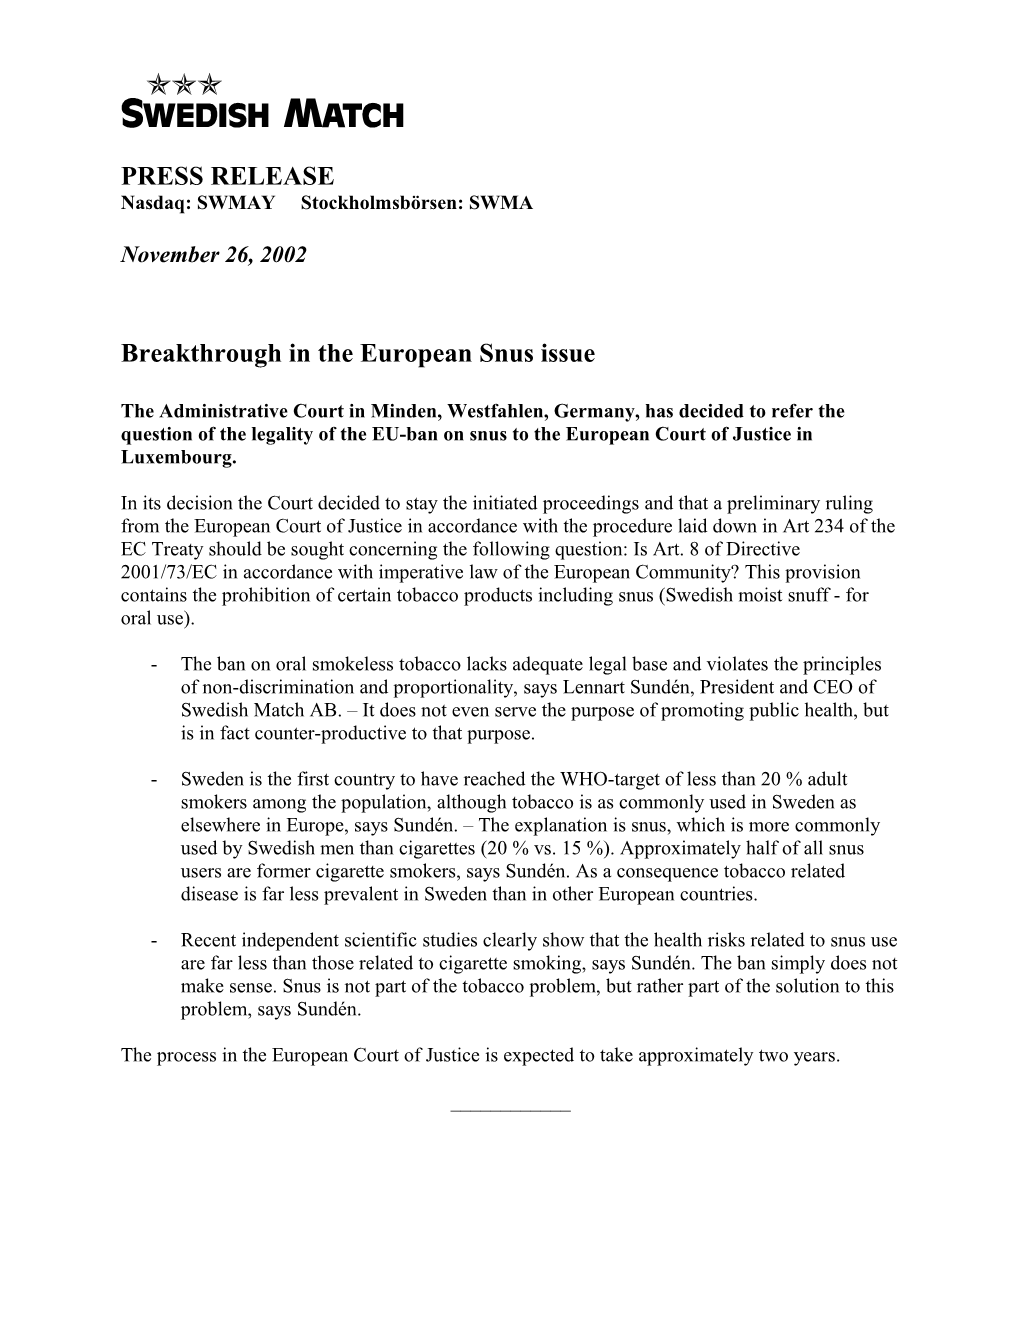 Breakthrough in the European Snus Issue